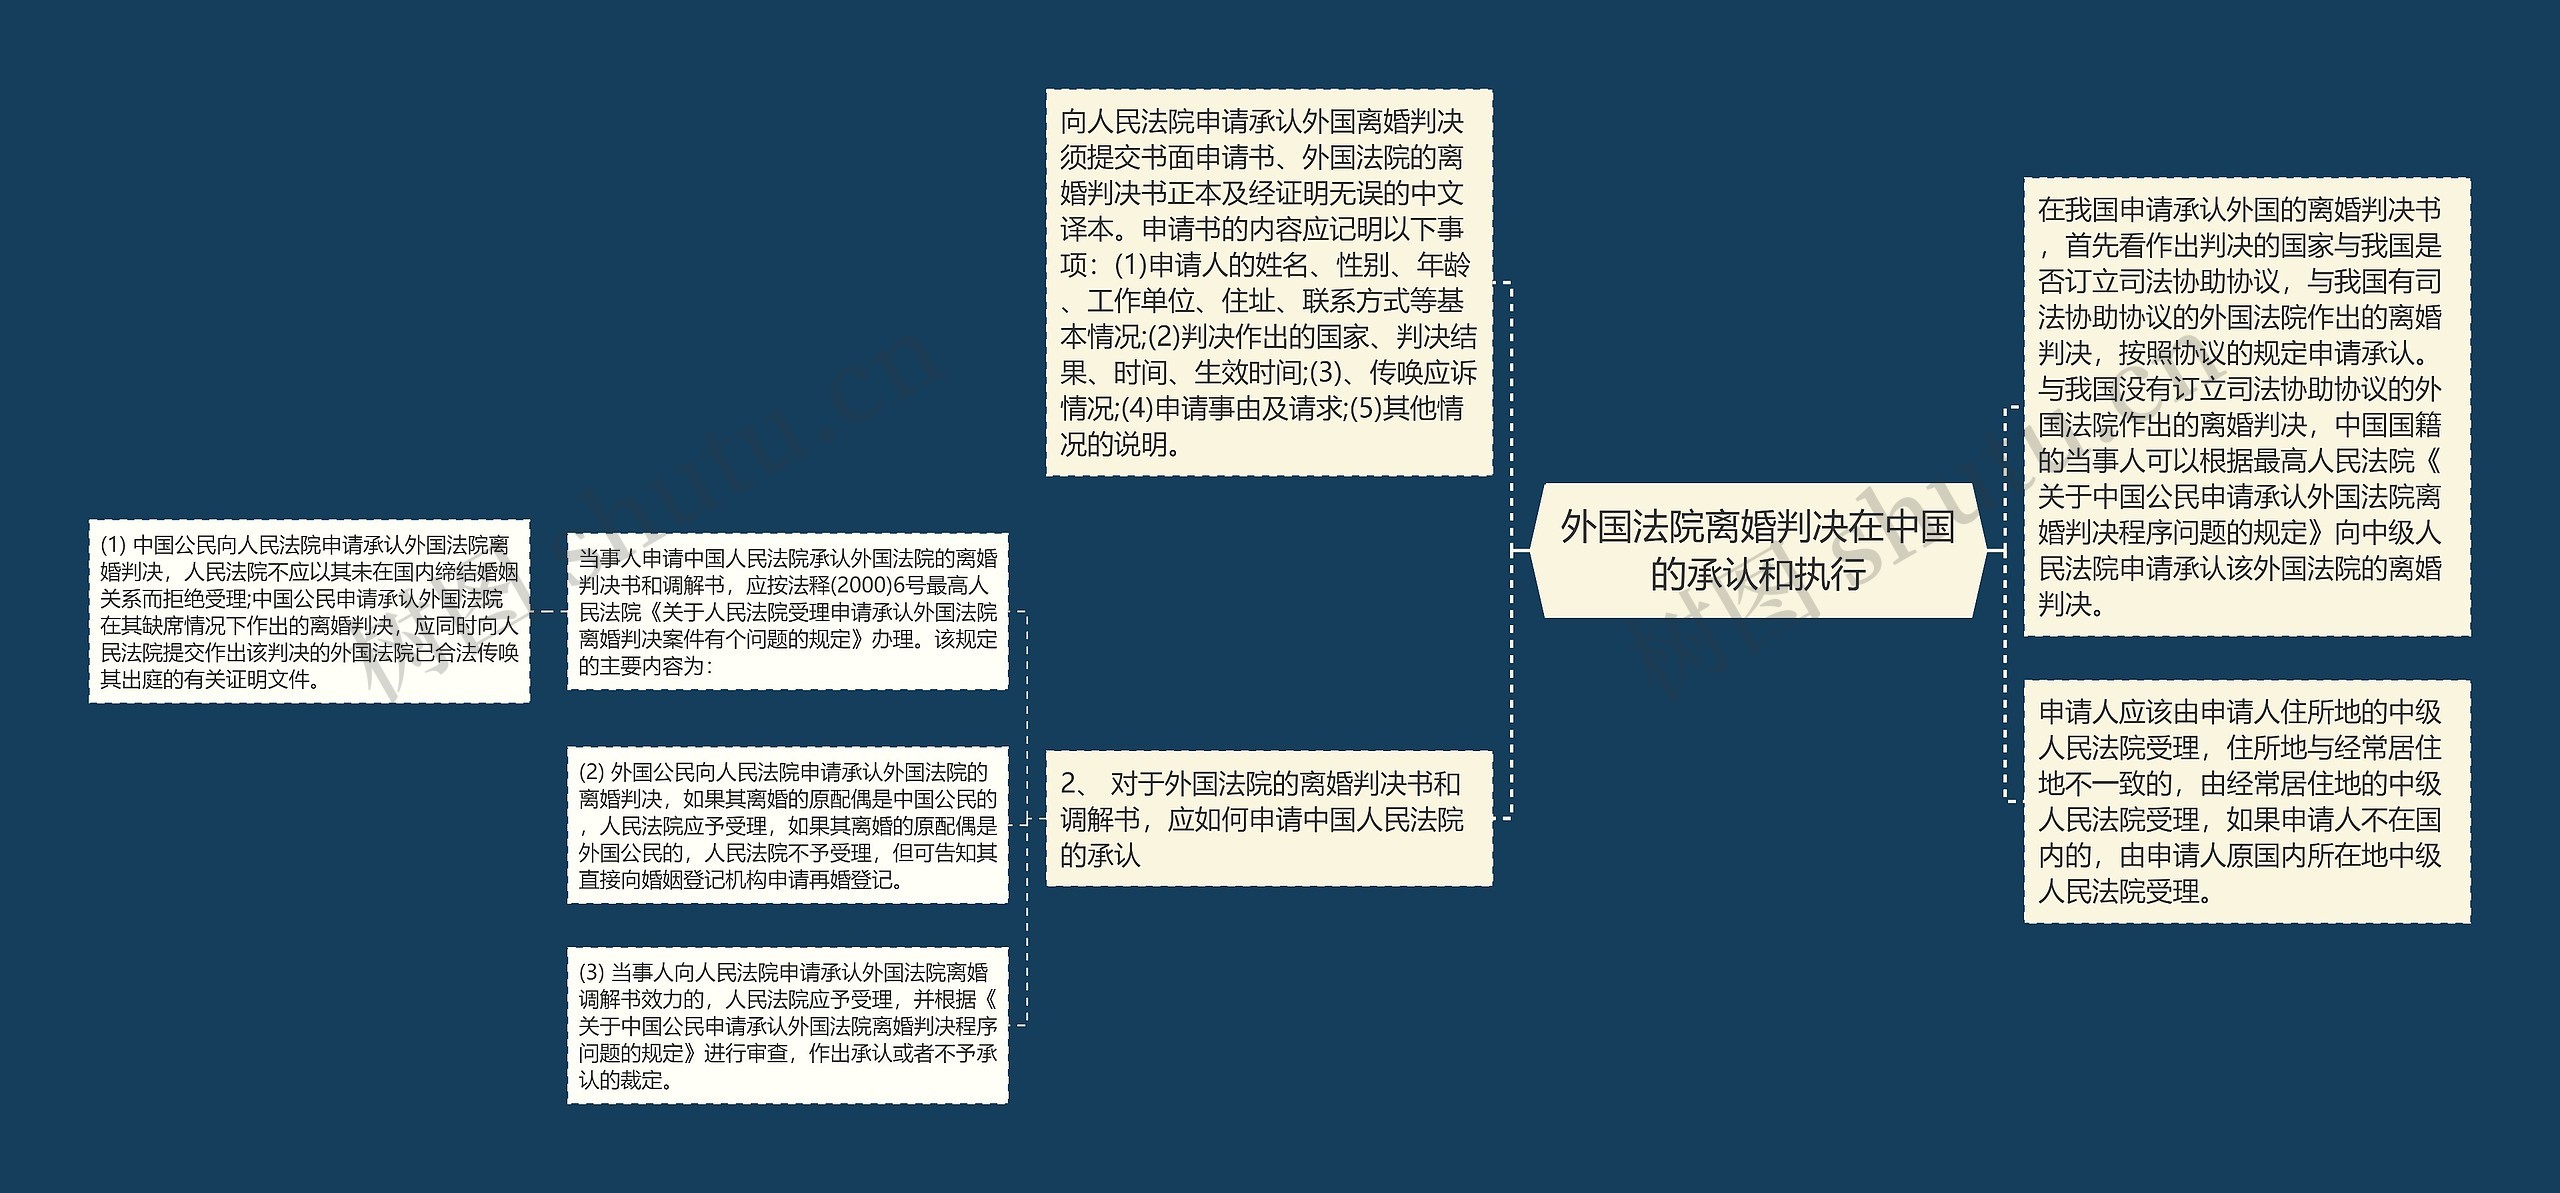 外国法院离婚判决在中国的承认和执行思维导图